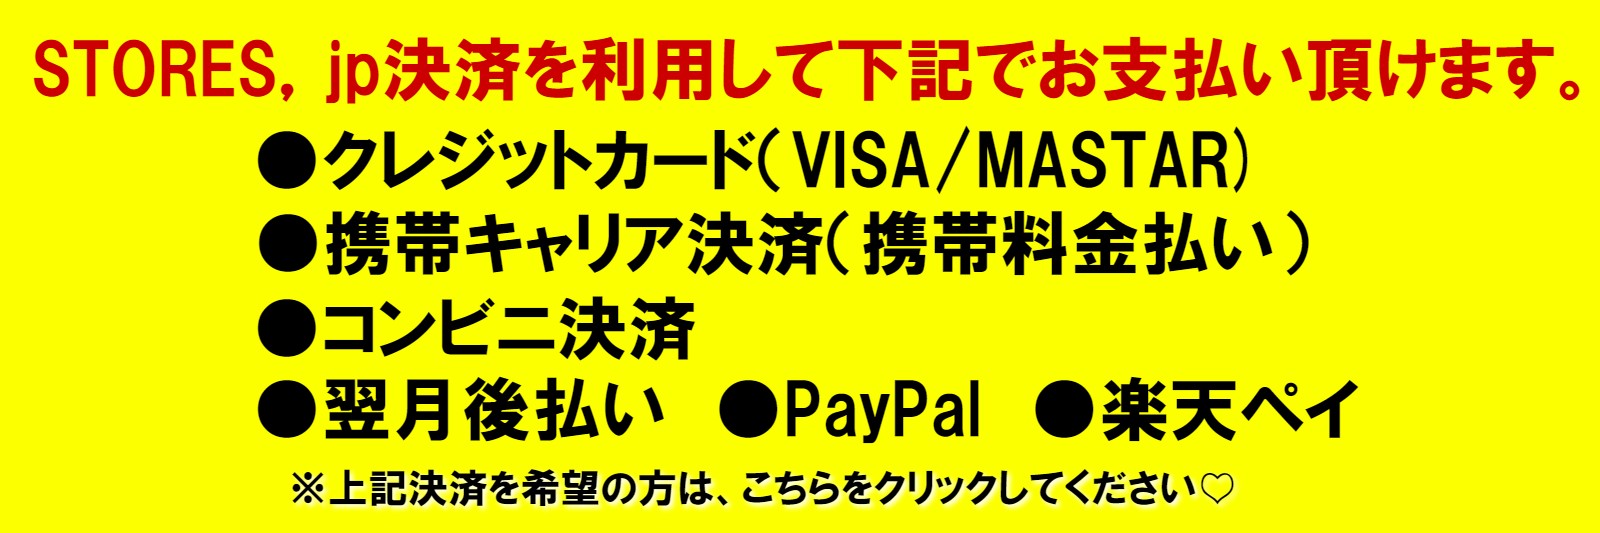 オンライン占いは、ストアーズを利用して、「クレジットカード（VISA・MASTAR）・携帯キャリア決済・コンビニ決済・翌月後支払い・PayPal・楽天ペイ」でもお支払いが出来ます。